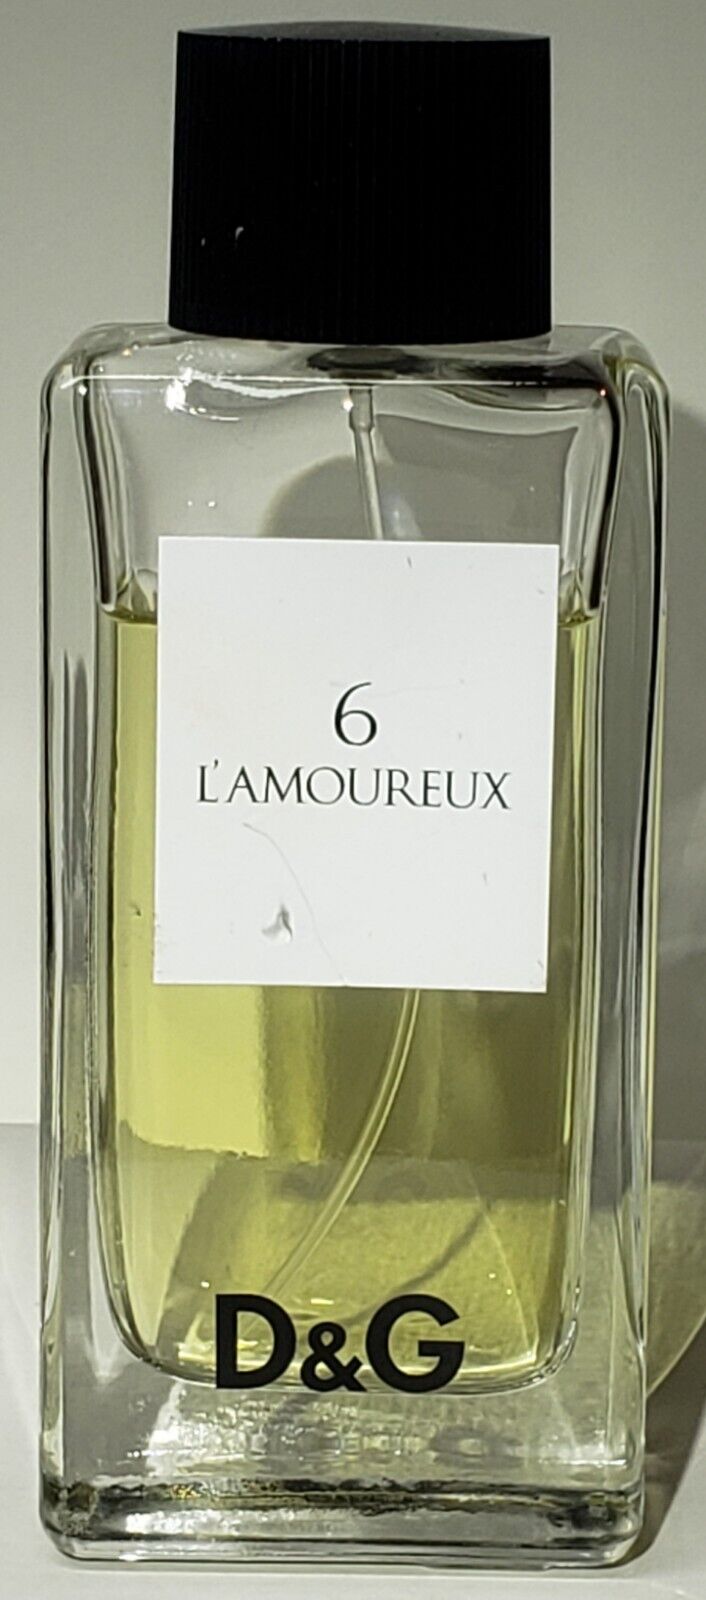 6 (Six) L'AMOUREUX by Dolce Gabbana~Eau de Toilette EDT Spray Perfume~3.3 oz~HTF